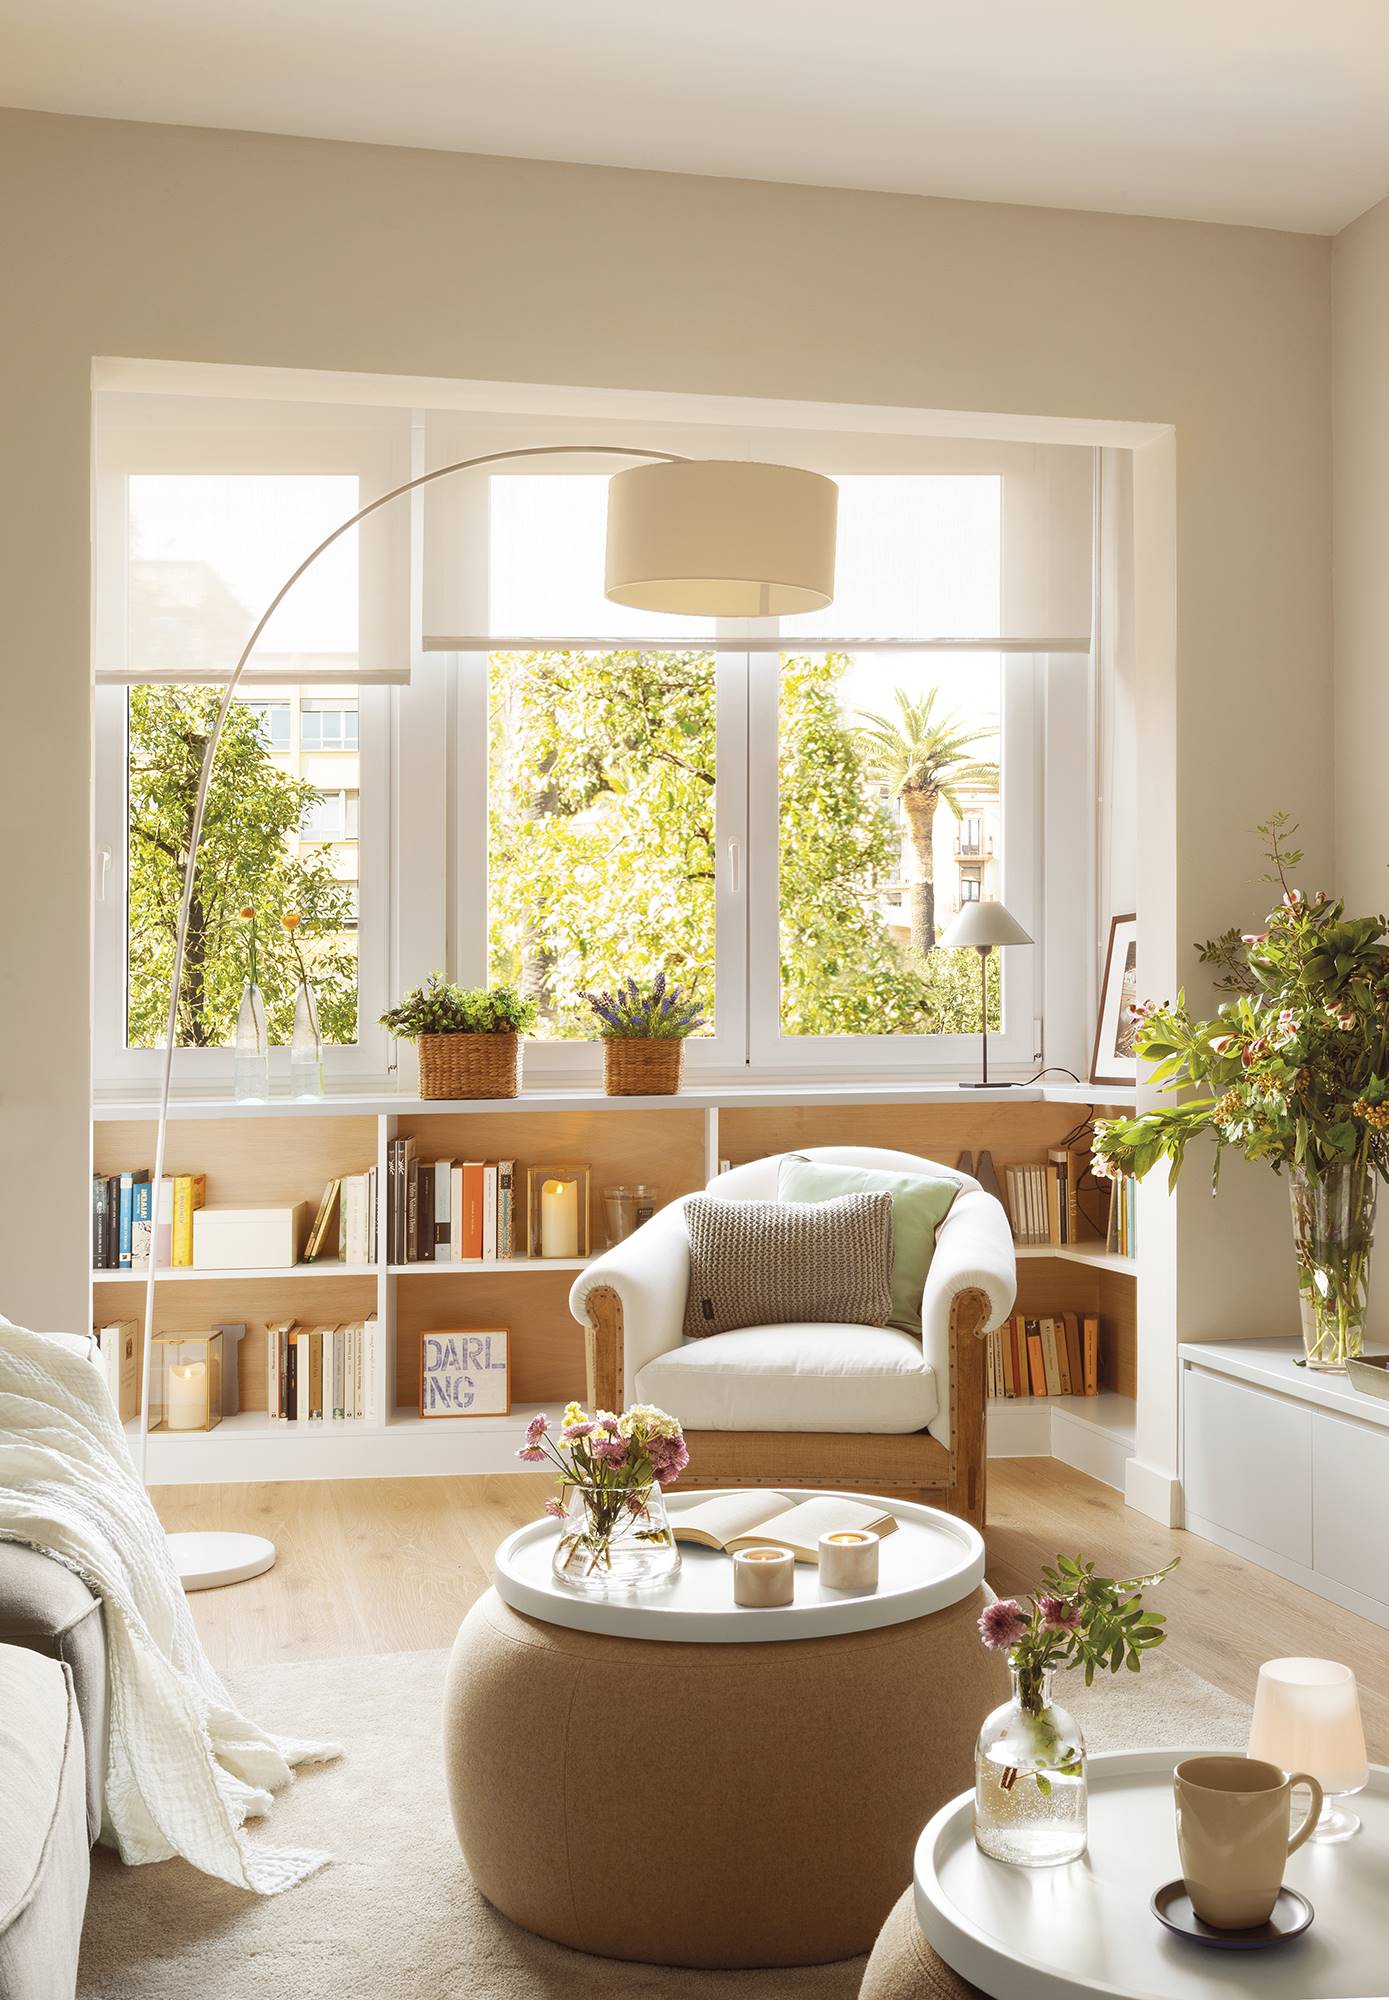 Salón de estilo nórdico decorado en color blanco con una librería baja situada bajo la ventana 00406035